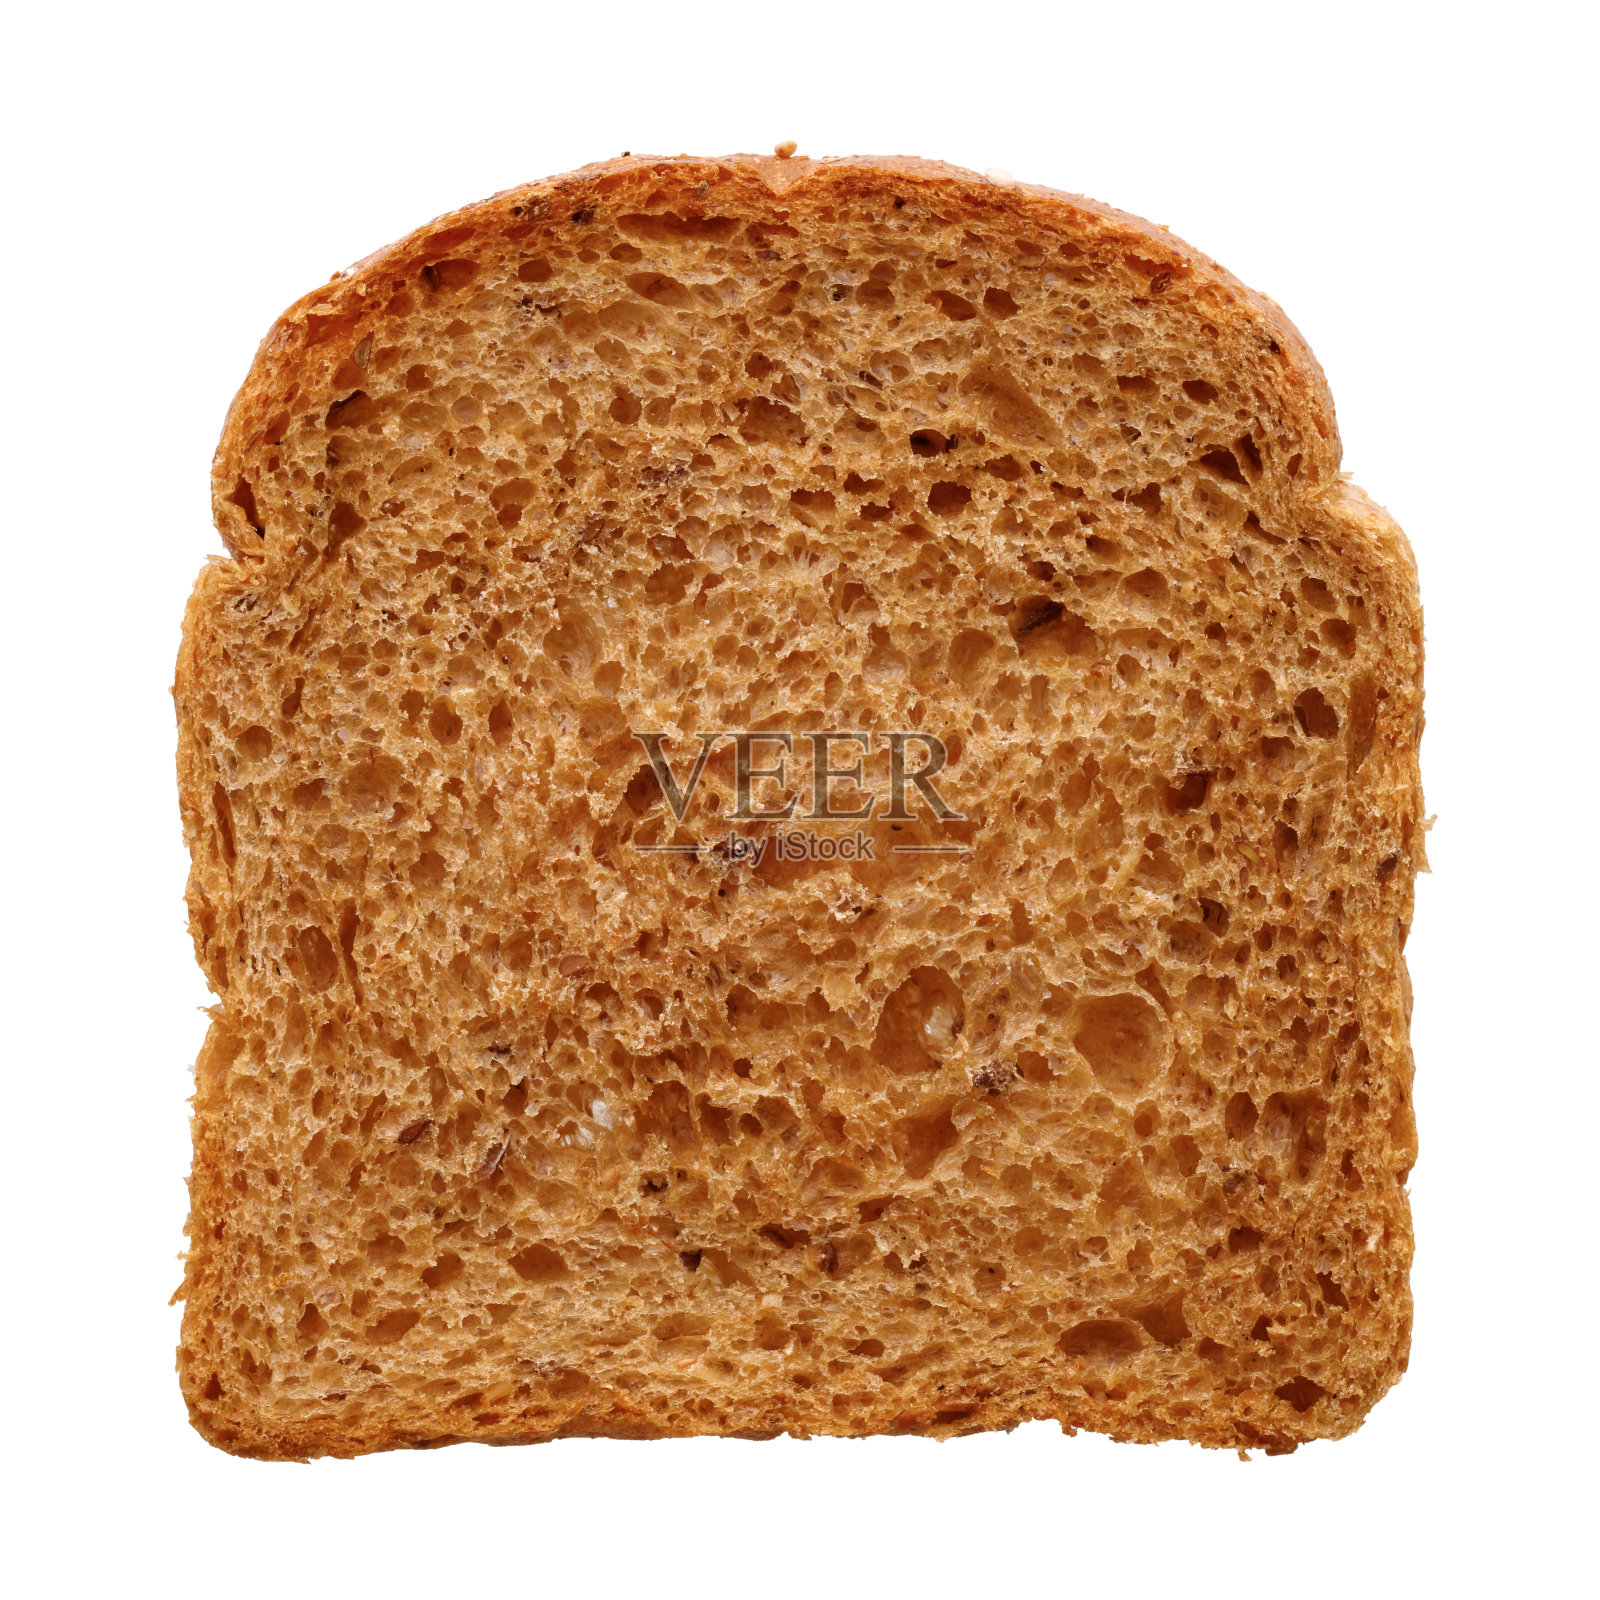 一片新鲜的杂粮面包照片摄影图片